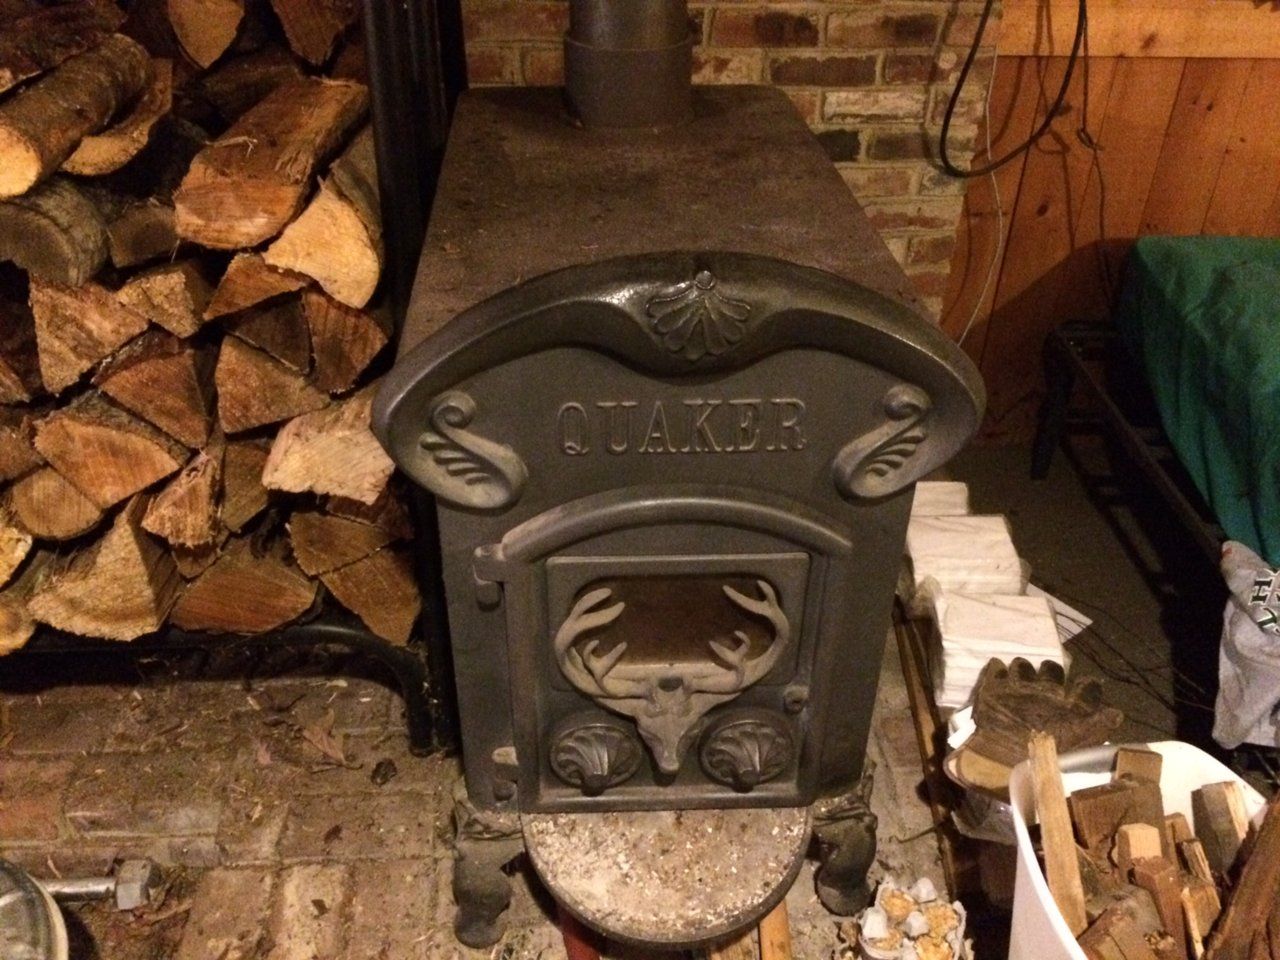 quaker stove 1